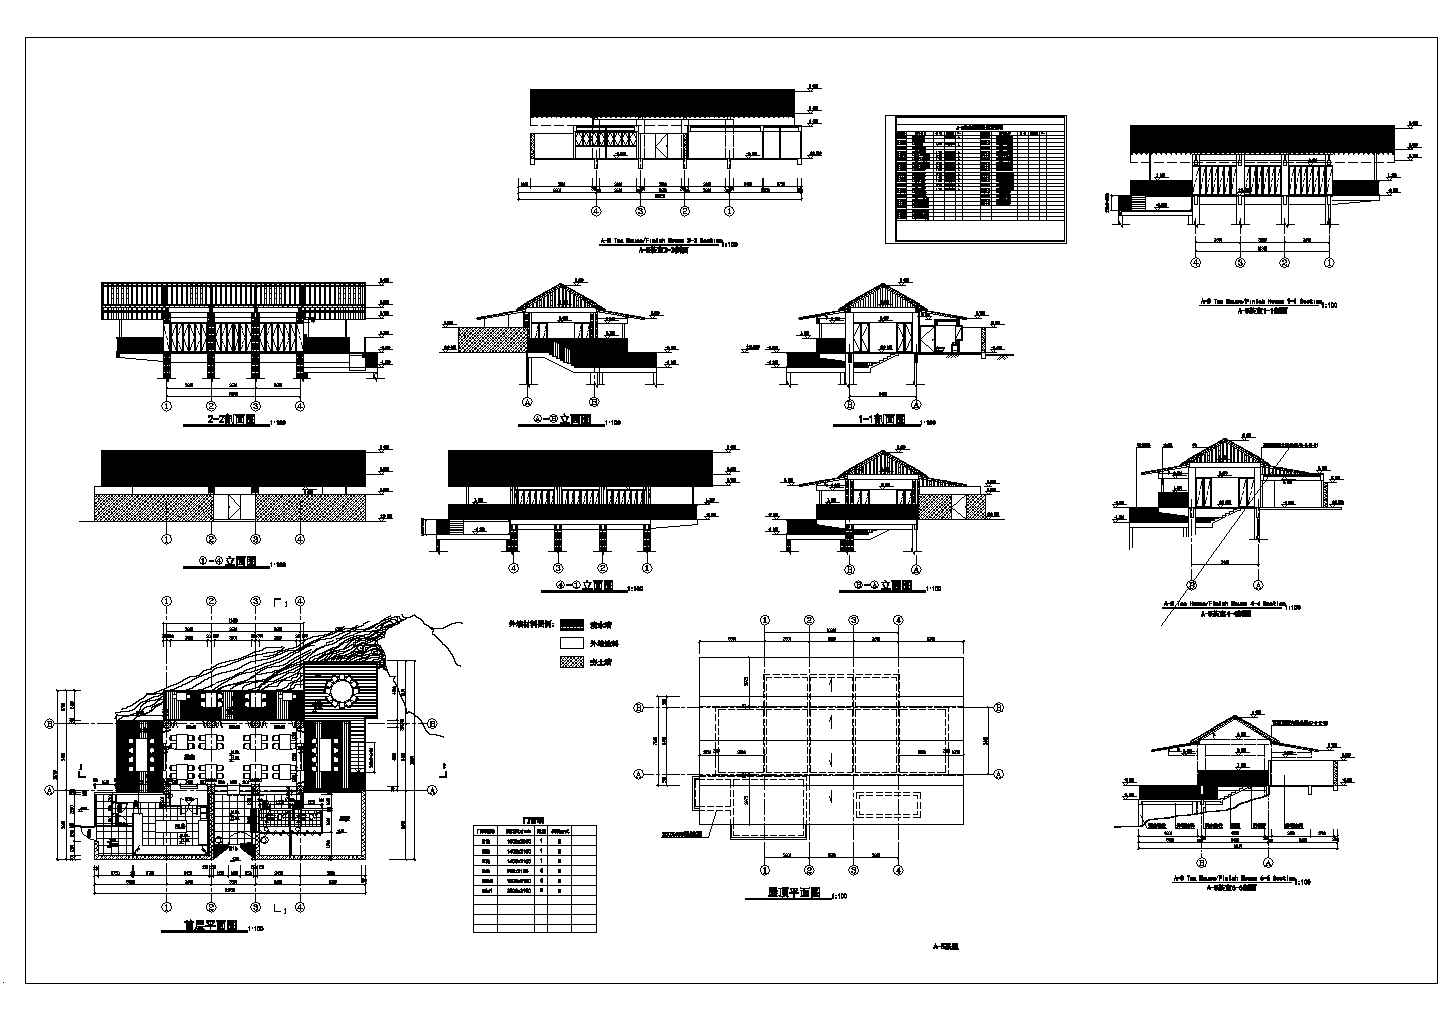 长21.95米 宽16.1米 1层度假村茶室建筑设计图